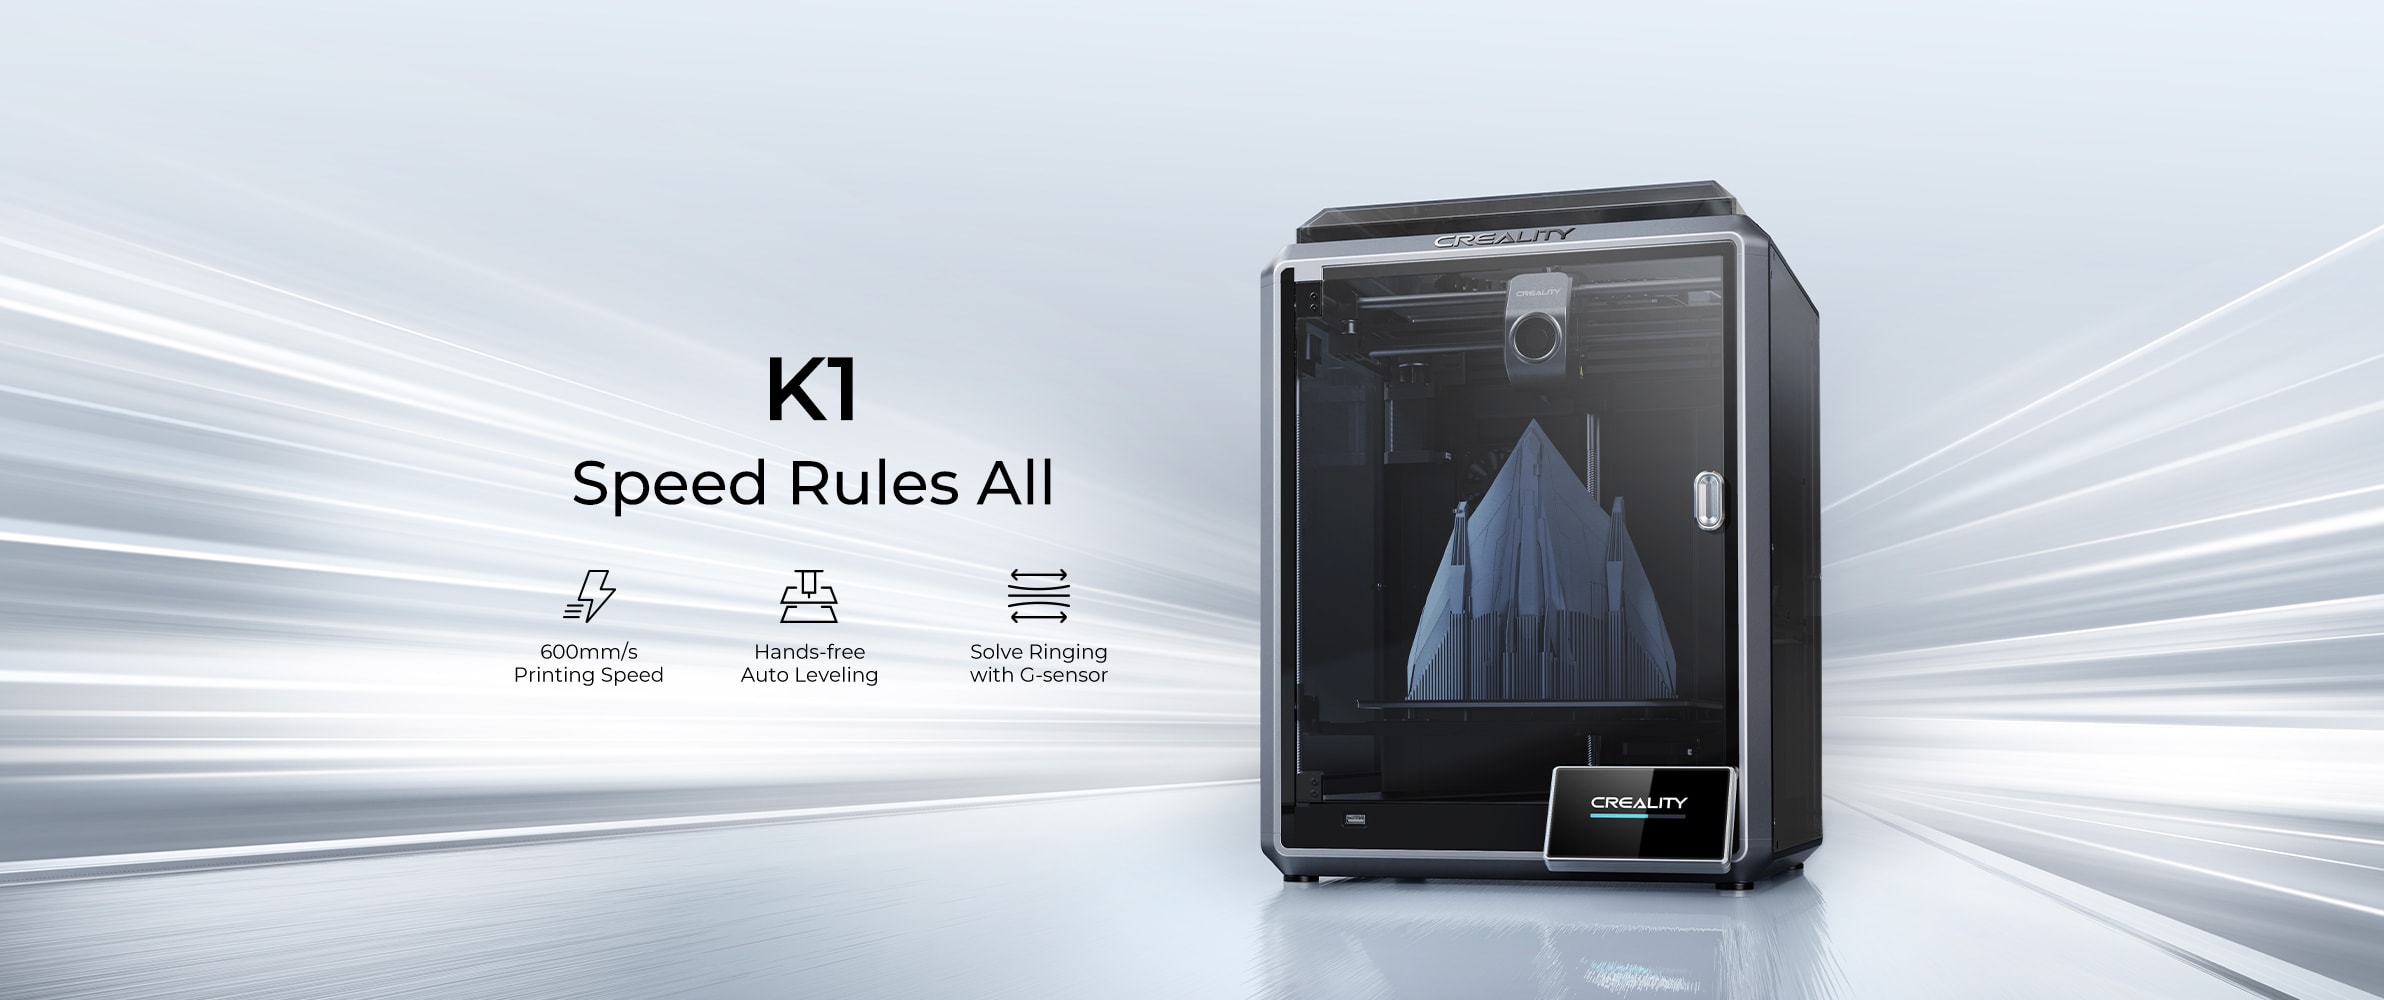 Скоростной 3D-принтер Creality K1 Speedy